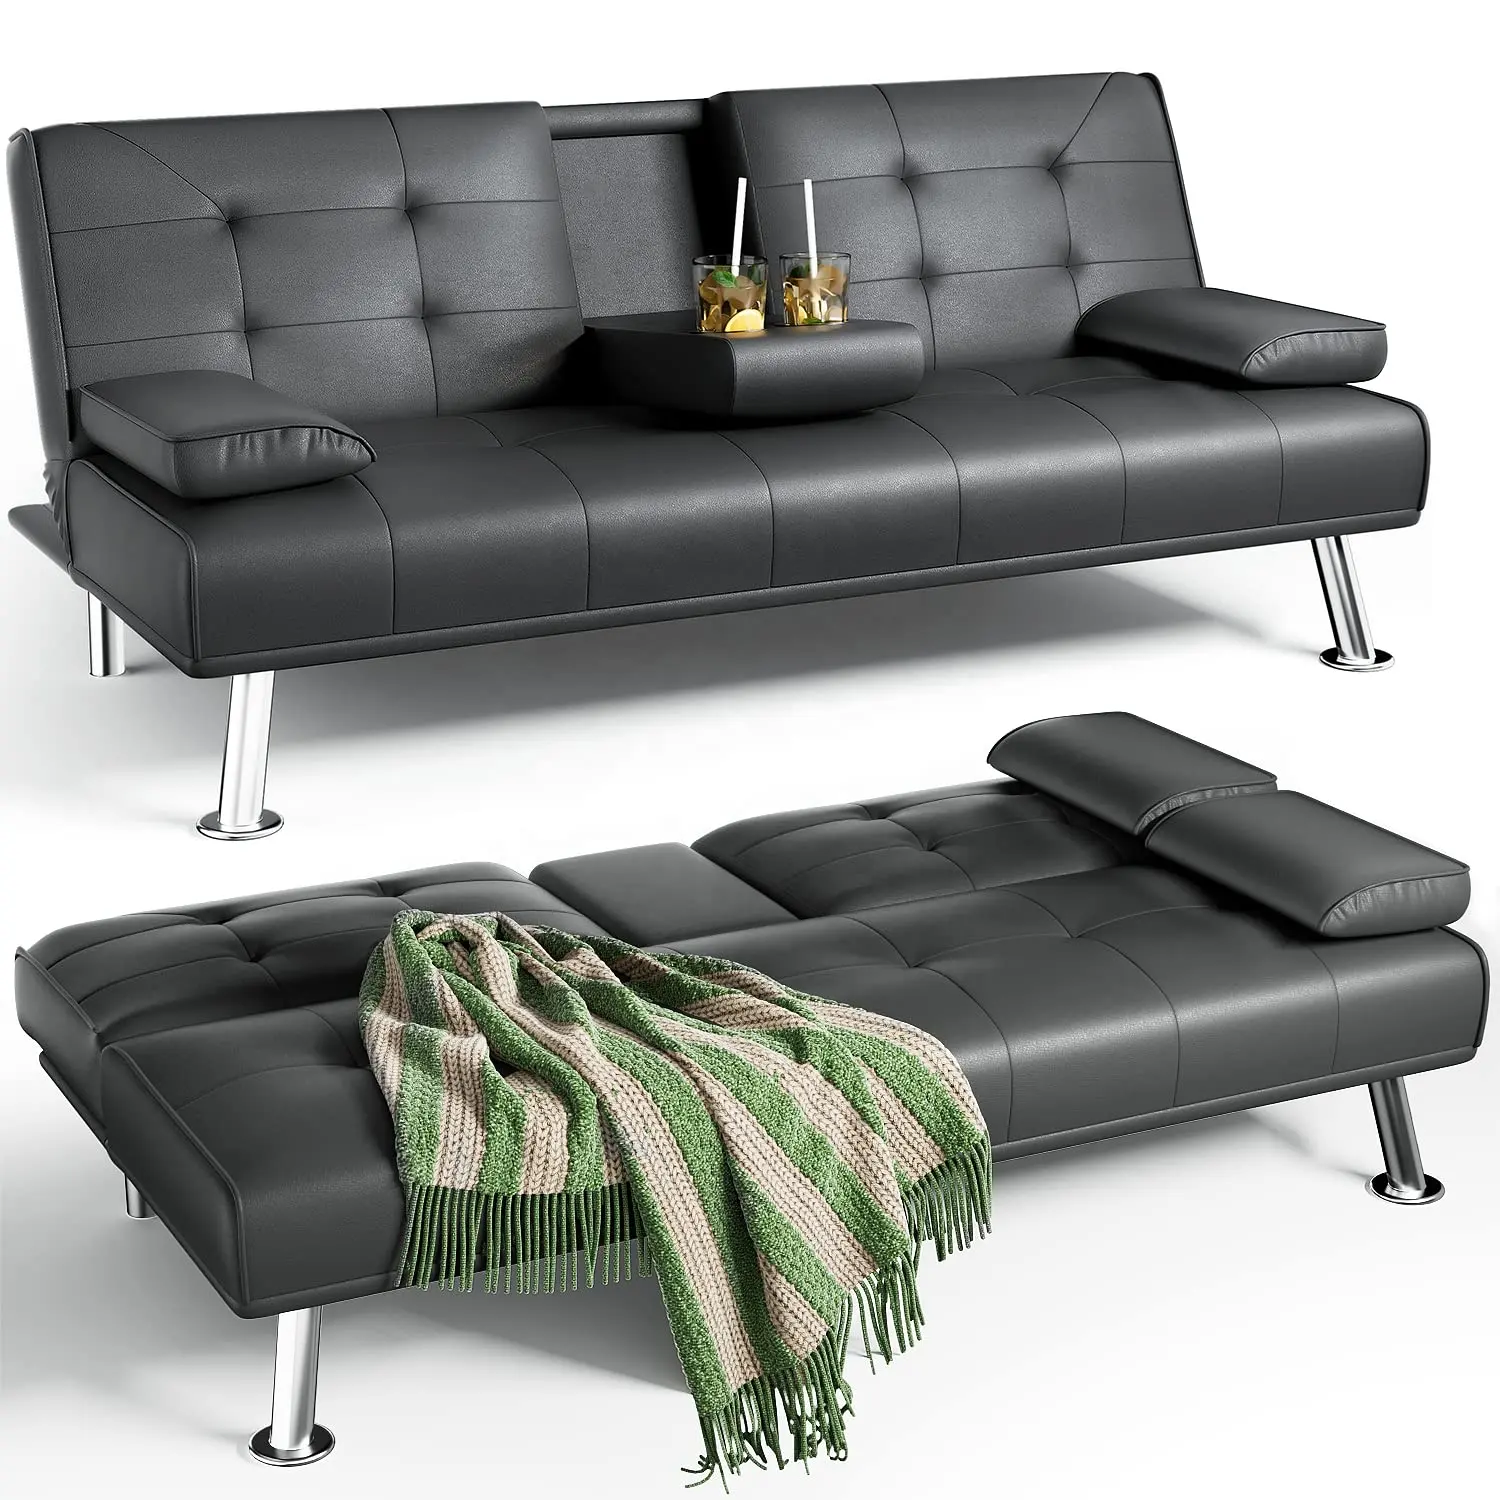 Vendas preços baixos multifuncional preguiçoso puxe futon conversível 3 lugares canto vir c dia vida móveis dobráveis sofás-cama